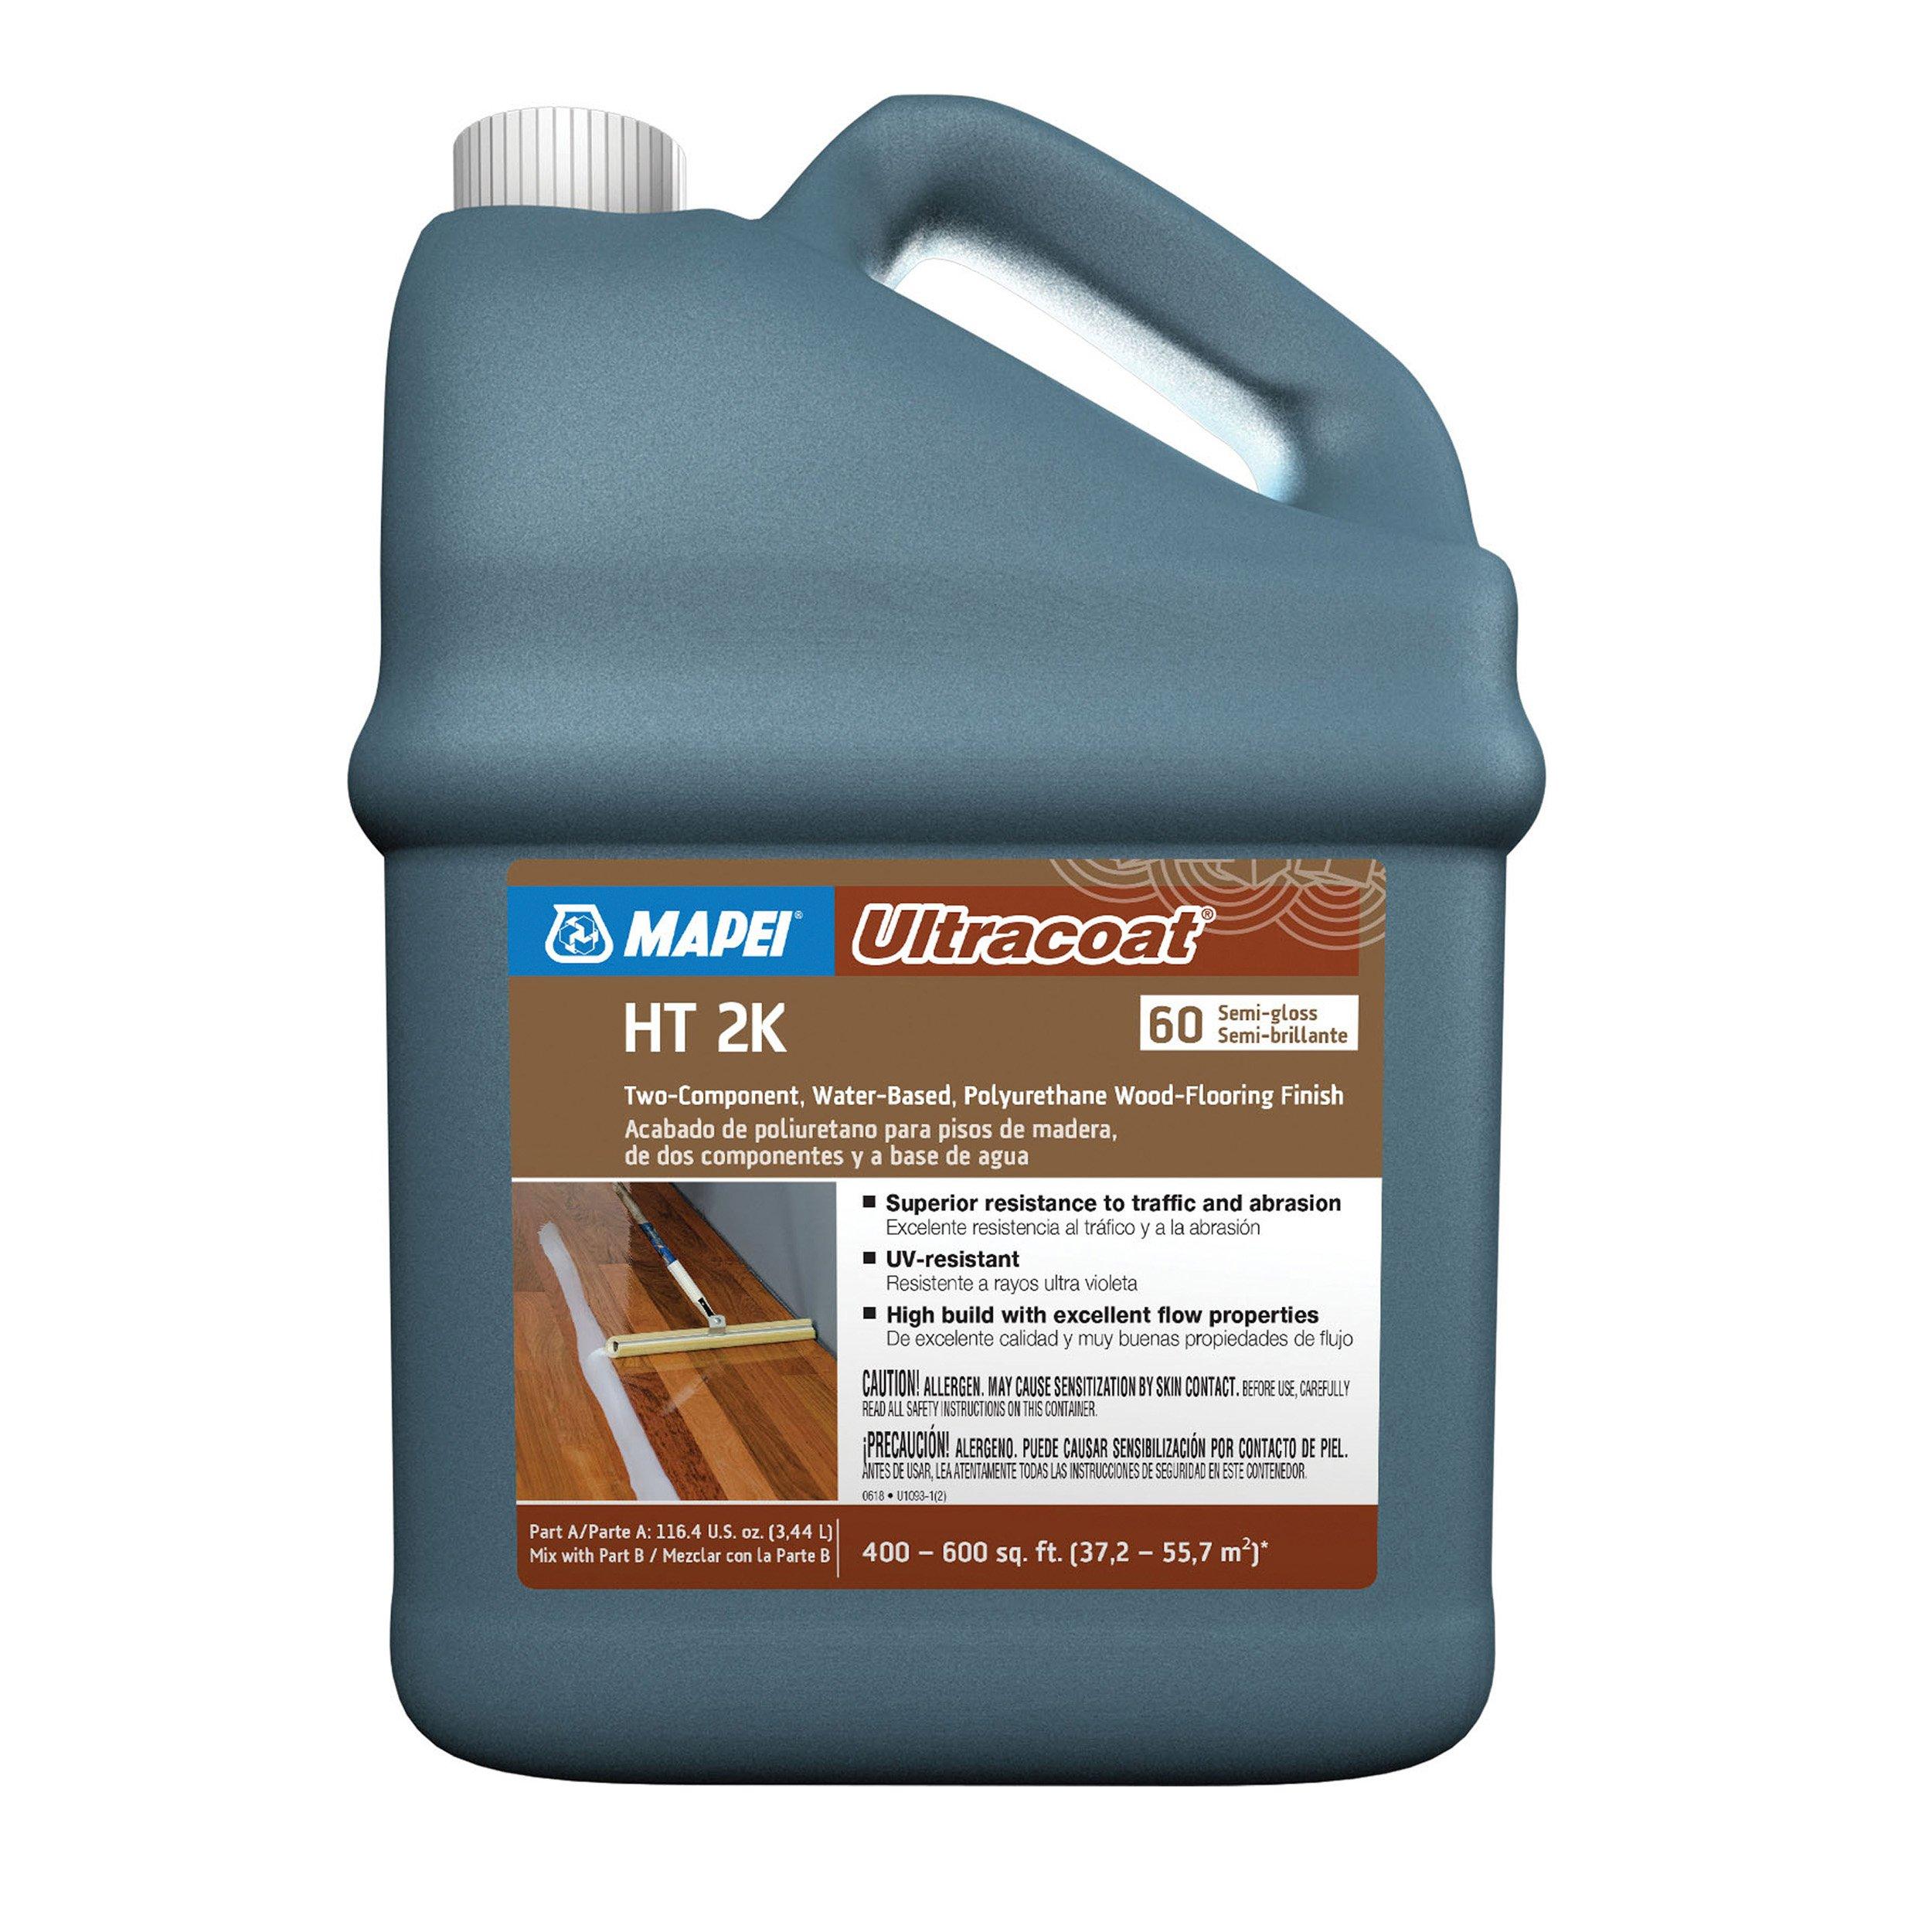 Mapei Ultracoat HT 2K 60 Semi-Gloss